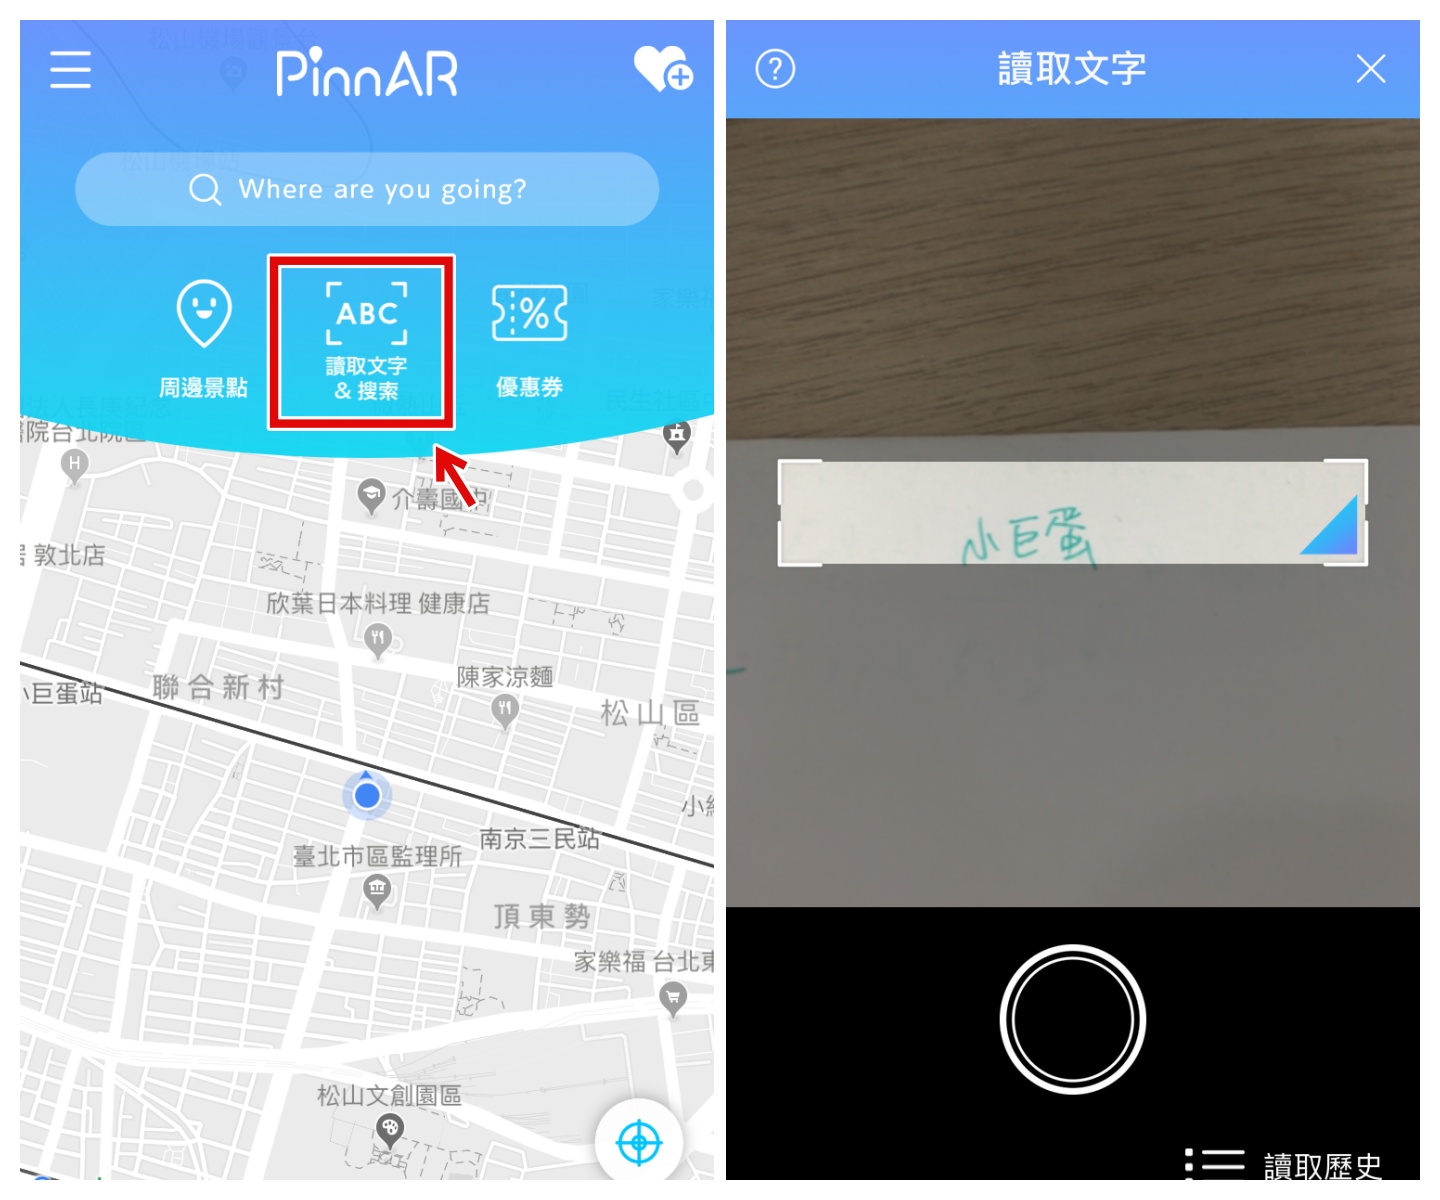 超強 AR 實景導航『 PinnAR 』！掃描路標圖片直接搜尋加翻譯！出國旅遊也不怕語言不通啦！Android / iOS